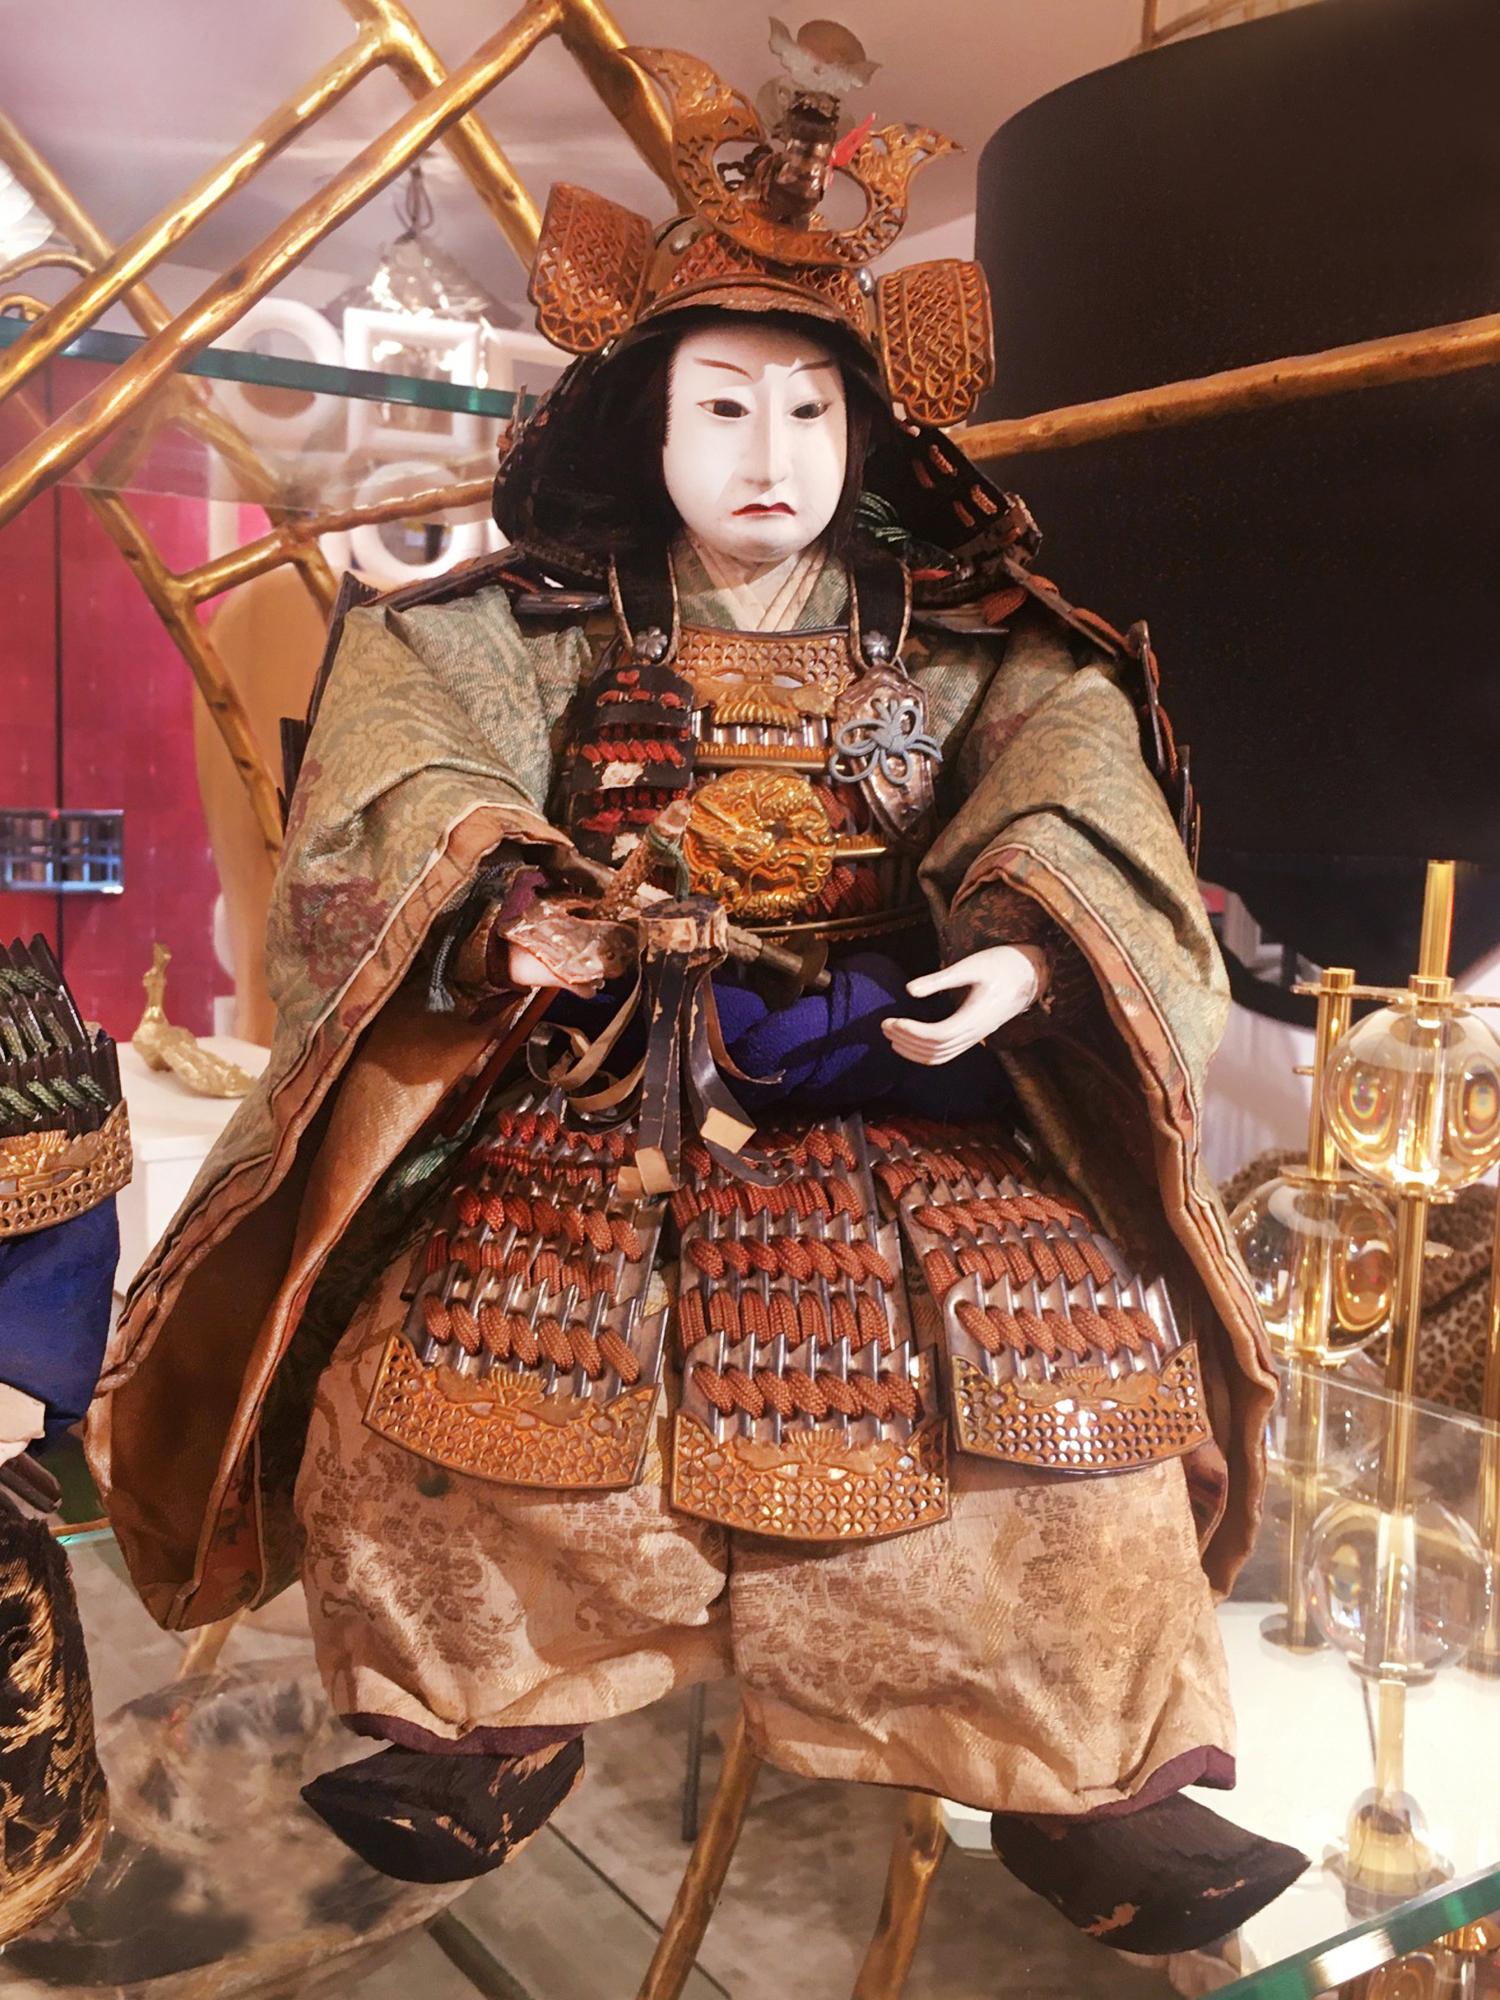 Sculpture Samuraï Puppet Musha Nyngyo B Set of 2 with structure
en bois, bois sculpté à la main, bois peint à la main, bois laqué à la main 
bois, recouvert de vêtements de marionnettes en soie brodés à la main. Tous
Les détails sont sculptés et